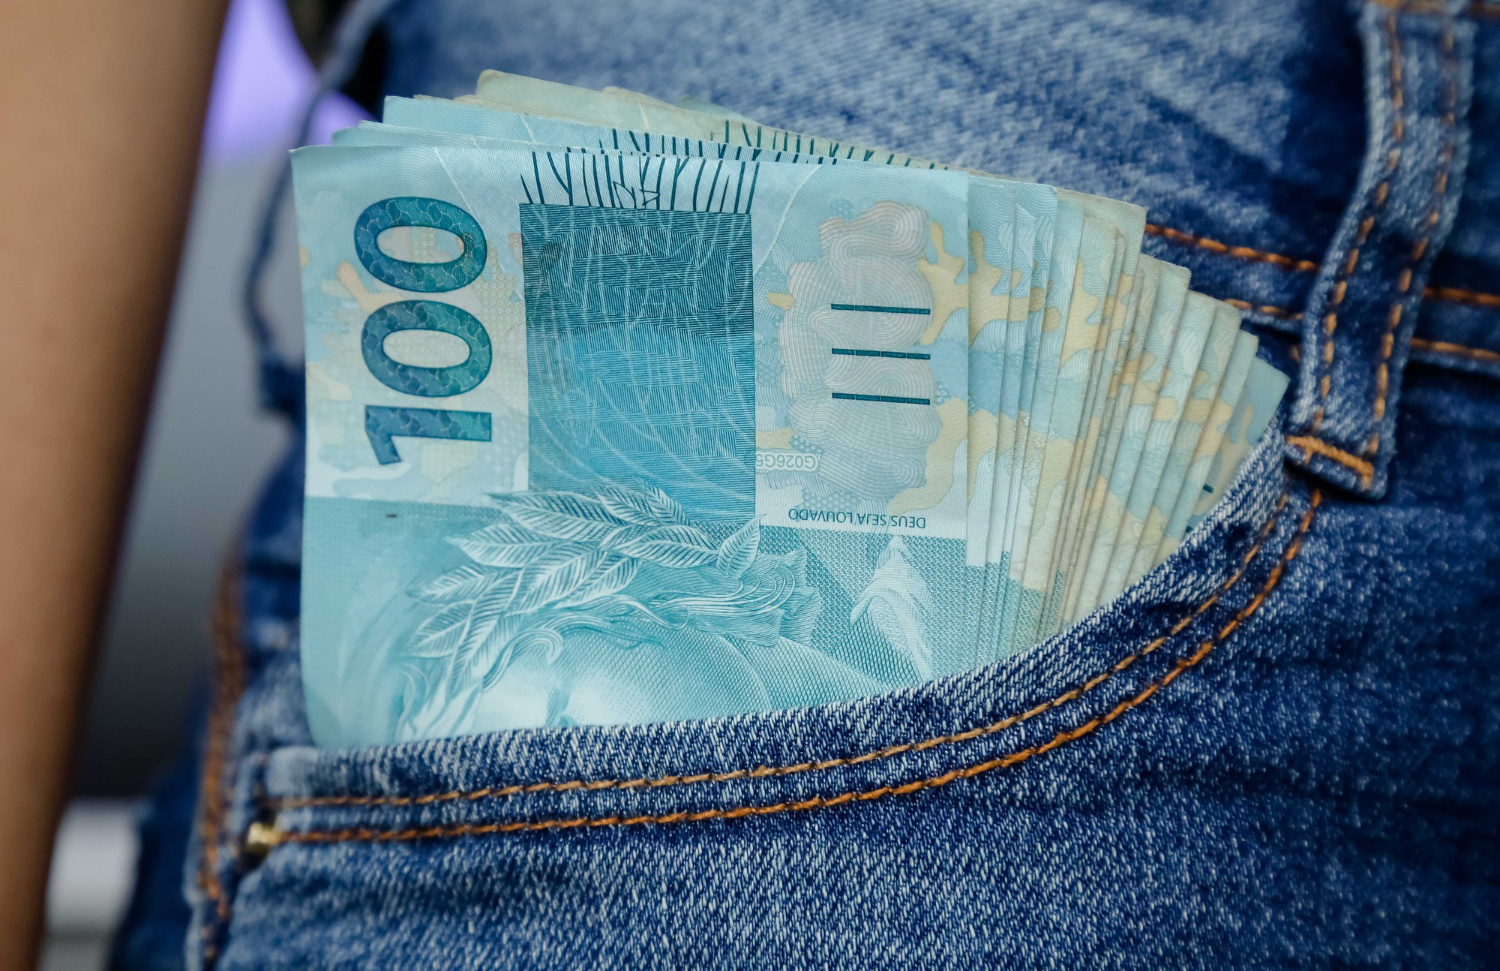 Governo Federal anuncia aumento histórico no BPC que pode chegar a R$ 1.500! Veja mais!